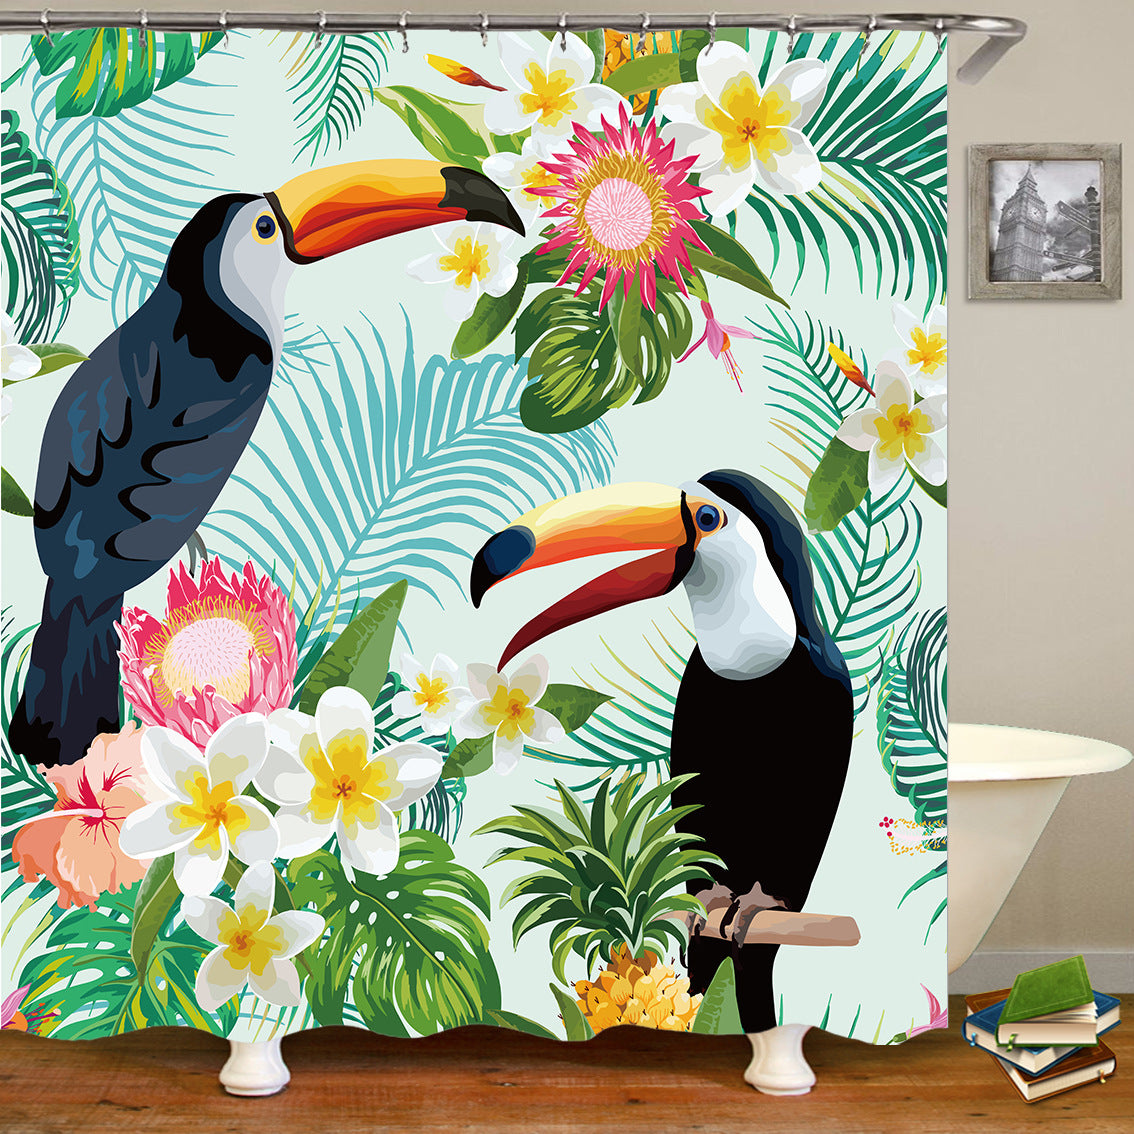 Tropical Bird & Flowers Bath Curtain Decor - blitz-styles